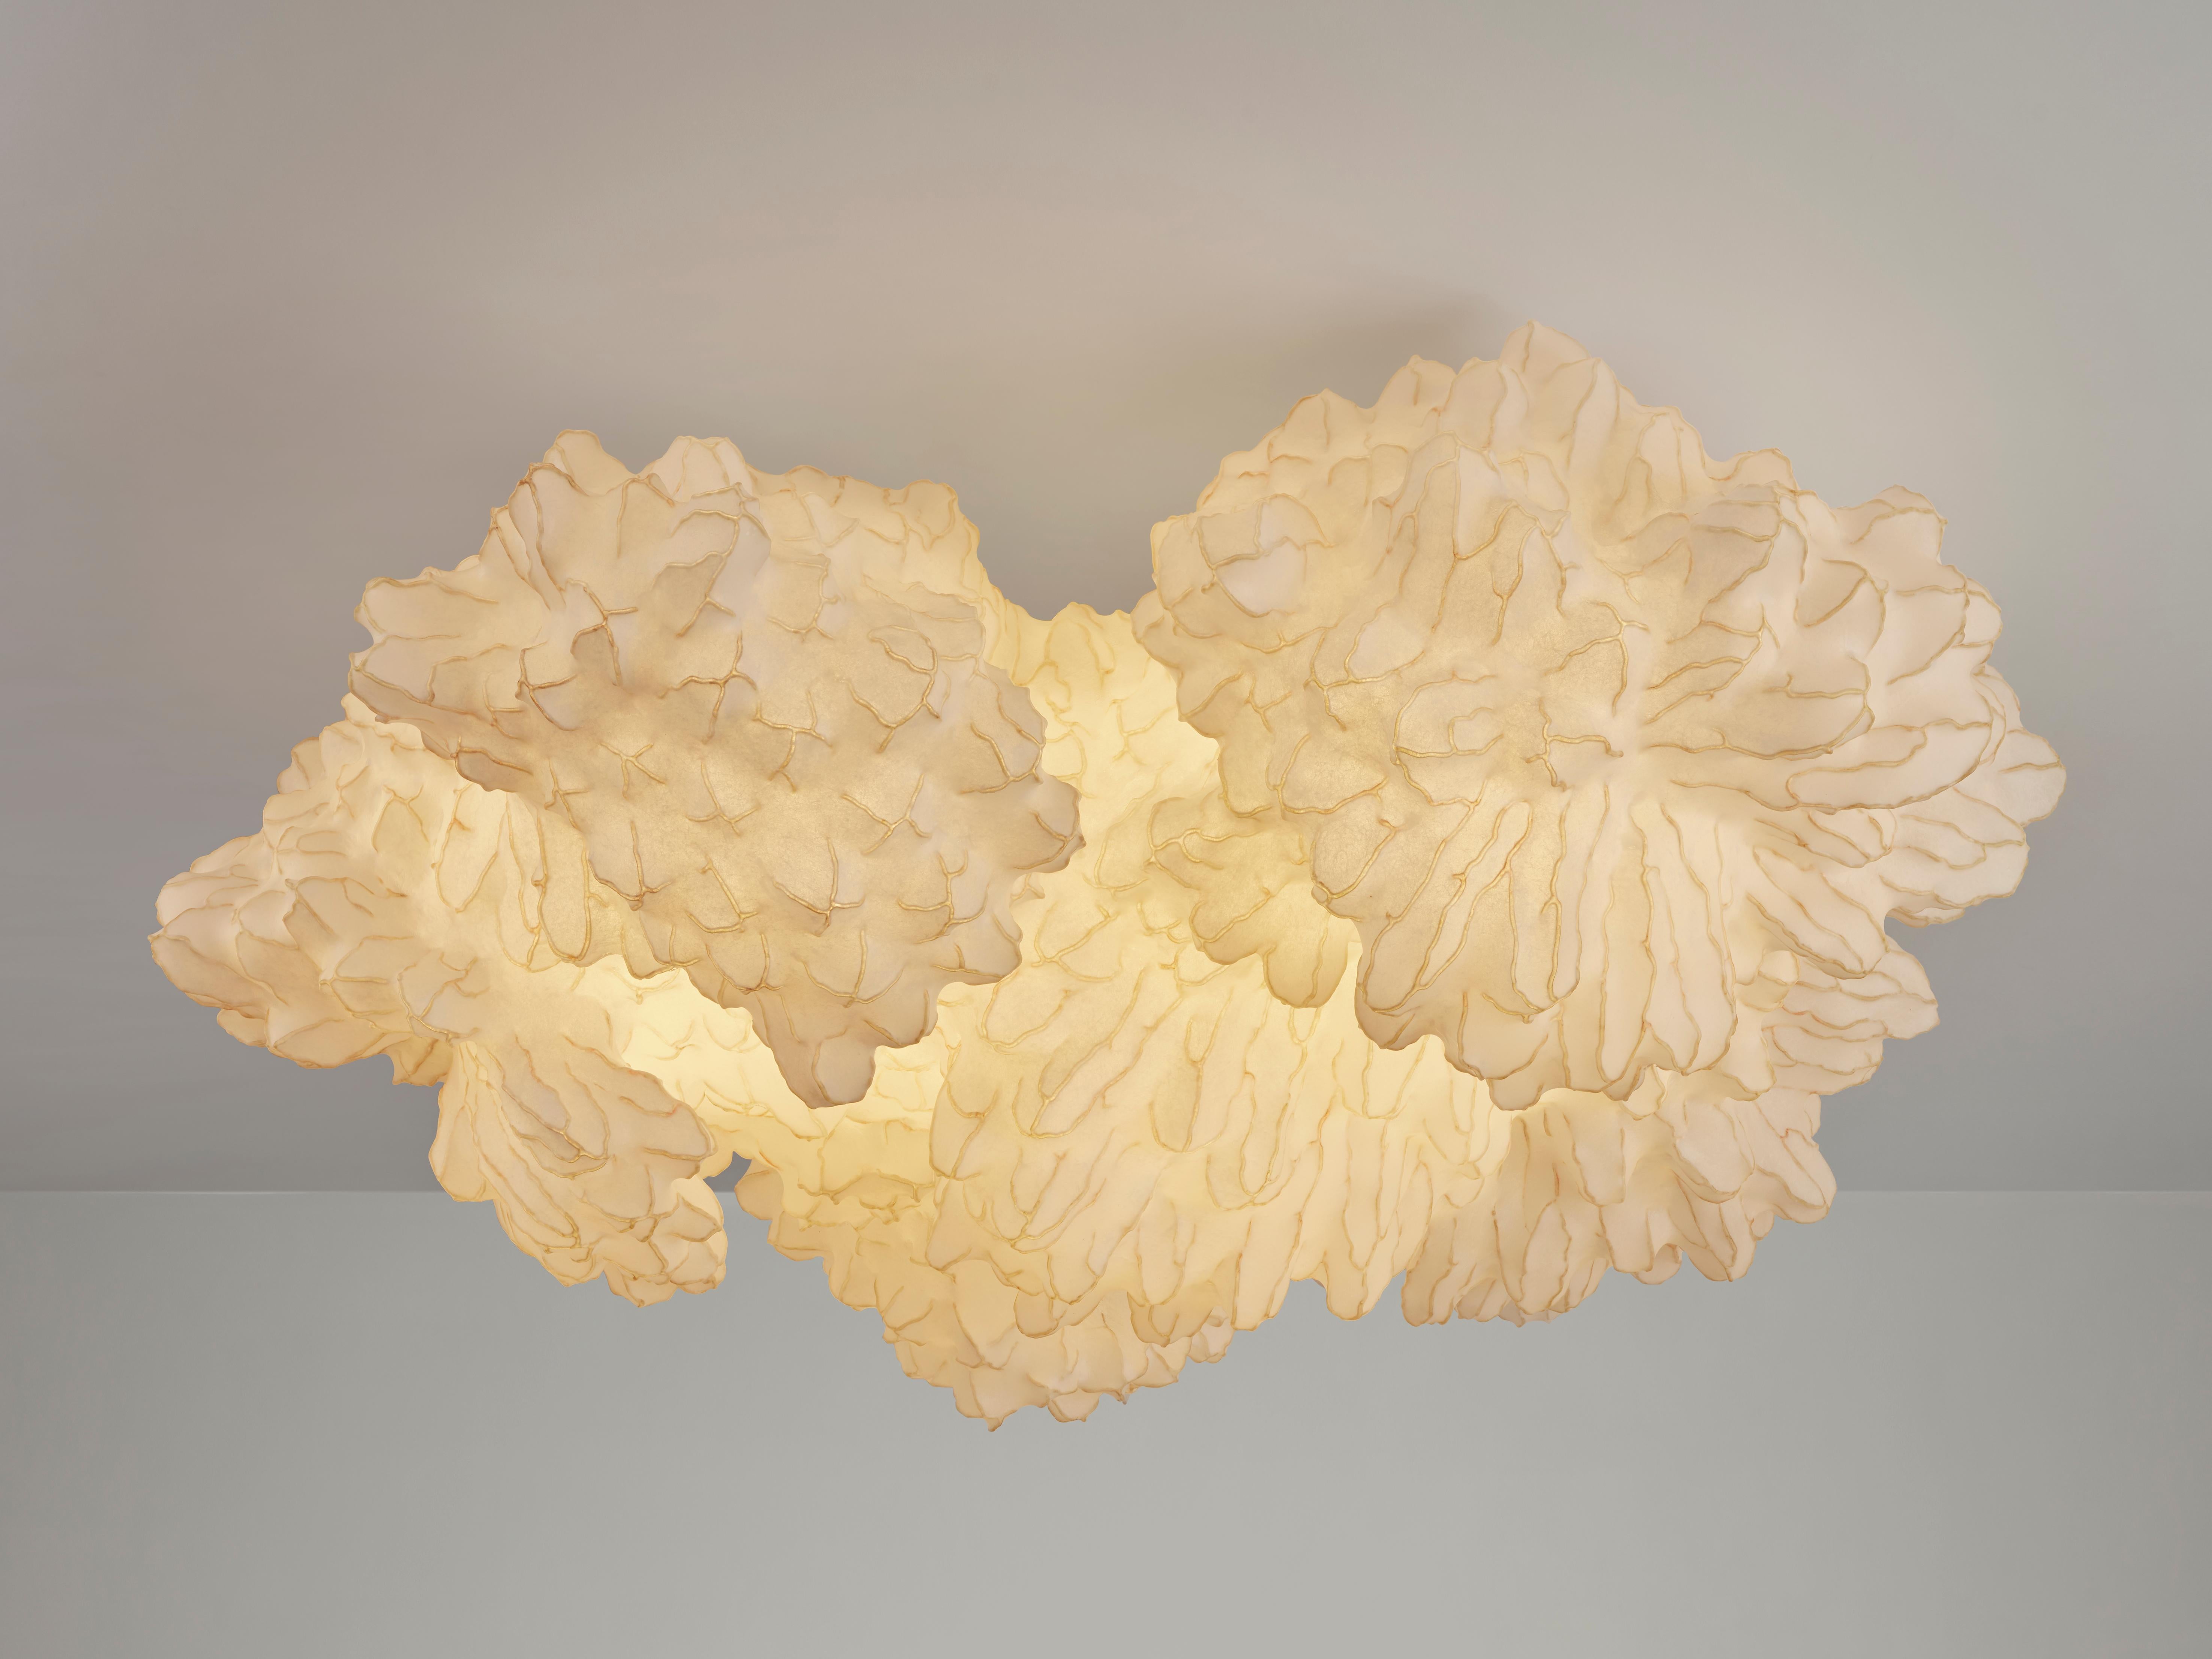 'ONCE' est une sculpture lumineuse de plafond unique qui rappelle les formes biomorphiques. Elle fait partie de la série 